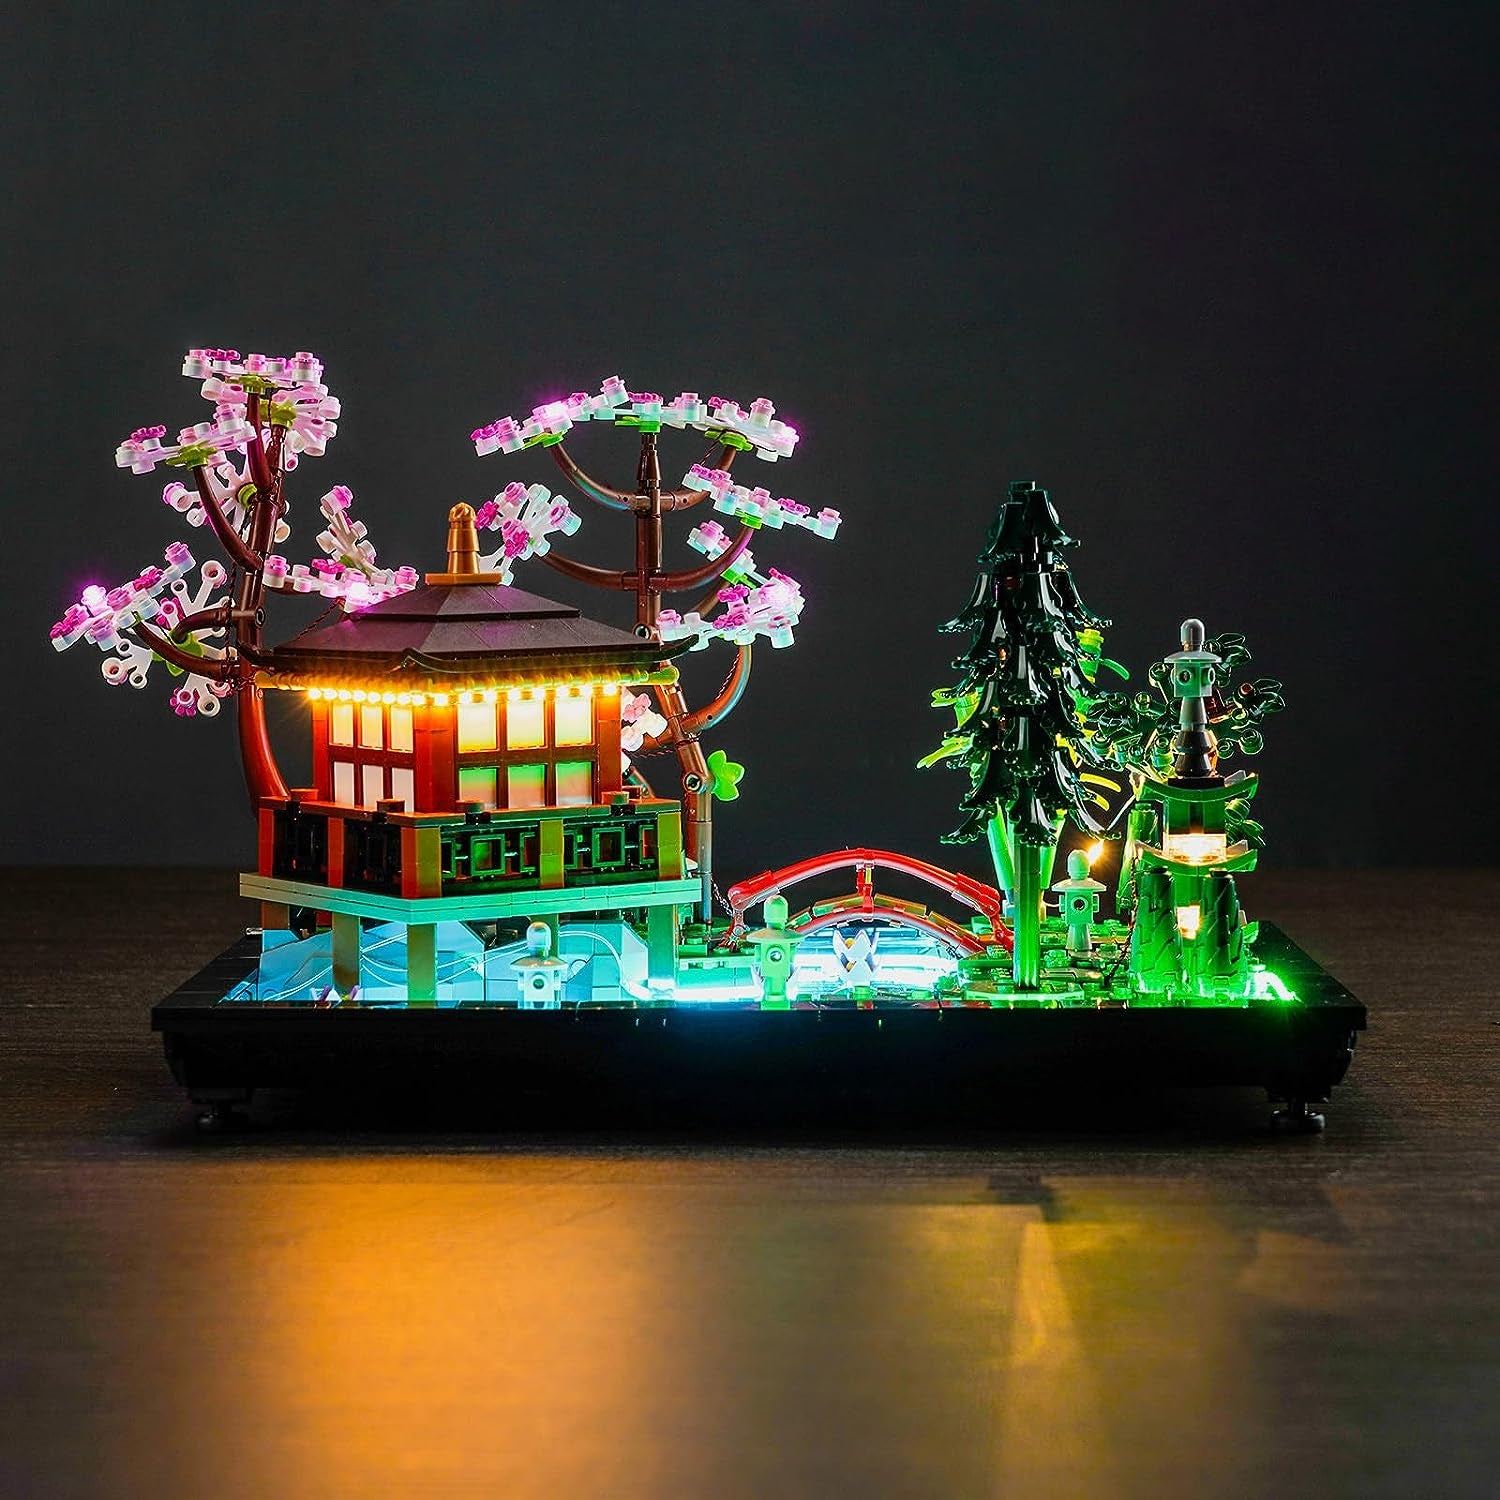 LED Light for Lego Tranquil Garden 10315 Building Set (Model Not Included), Creative Lighting for Lego Zen Garden